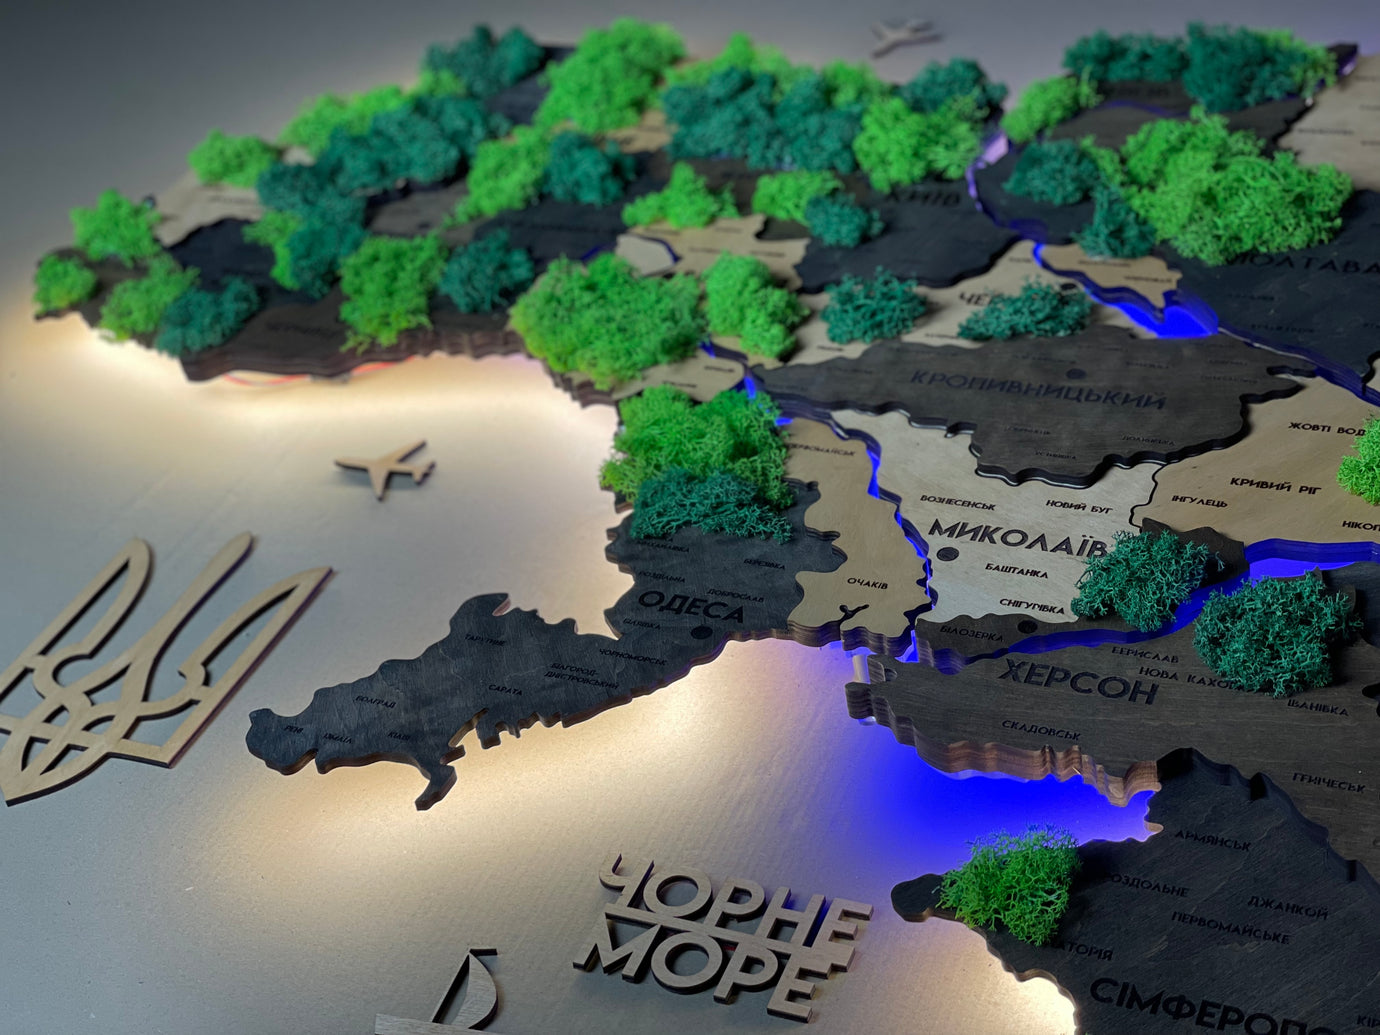 Деталізована багатошарова карта України з підсвіткою річок та по контуру і мохом колір Brut